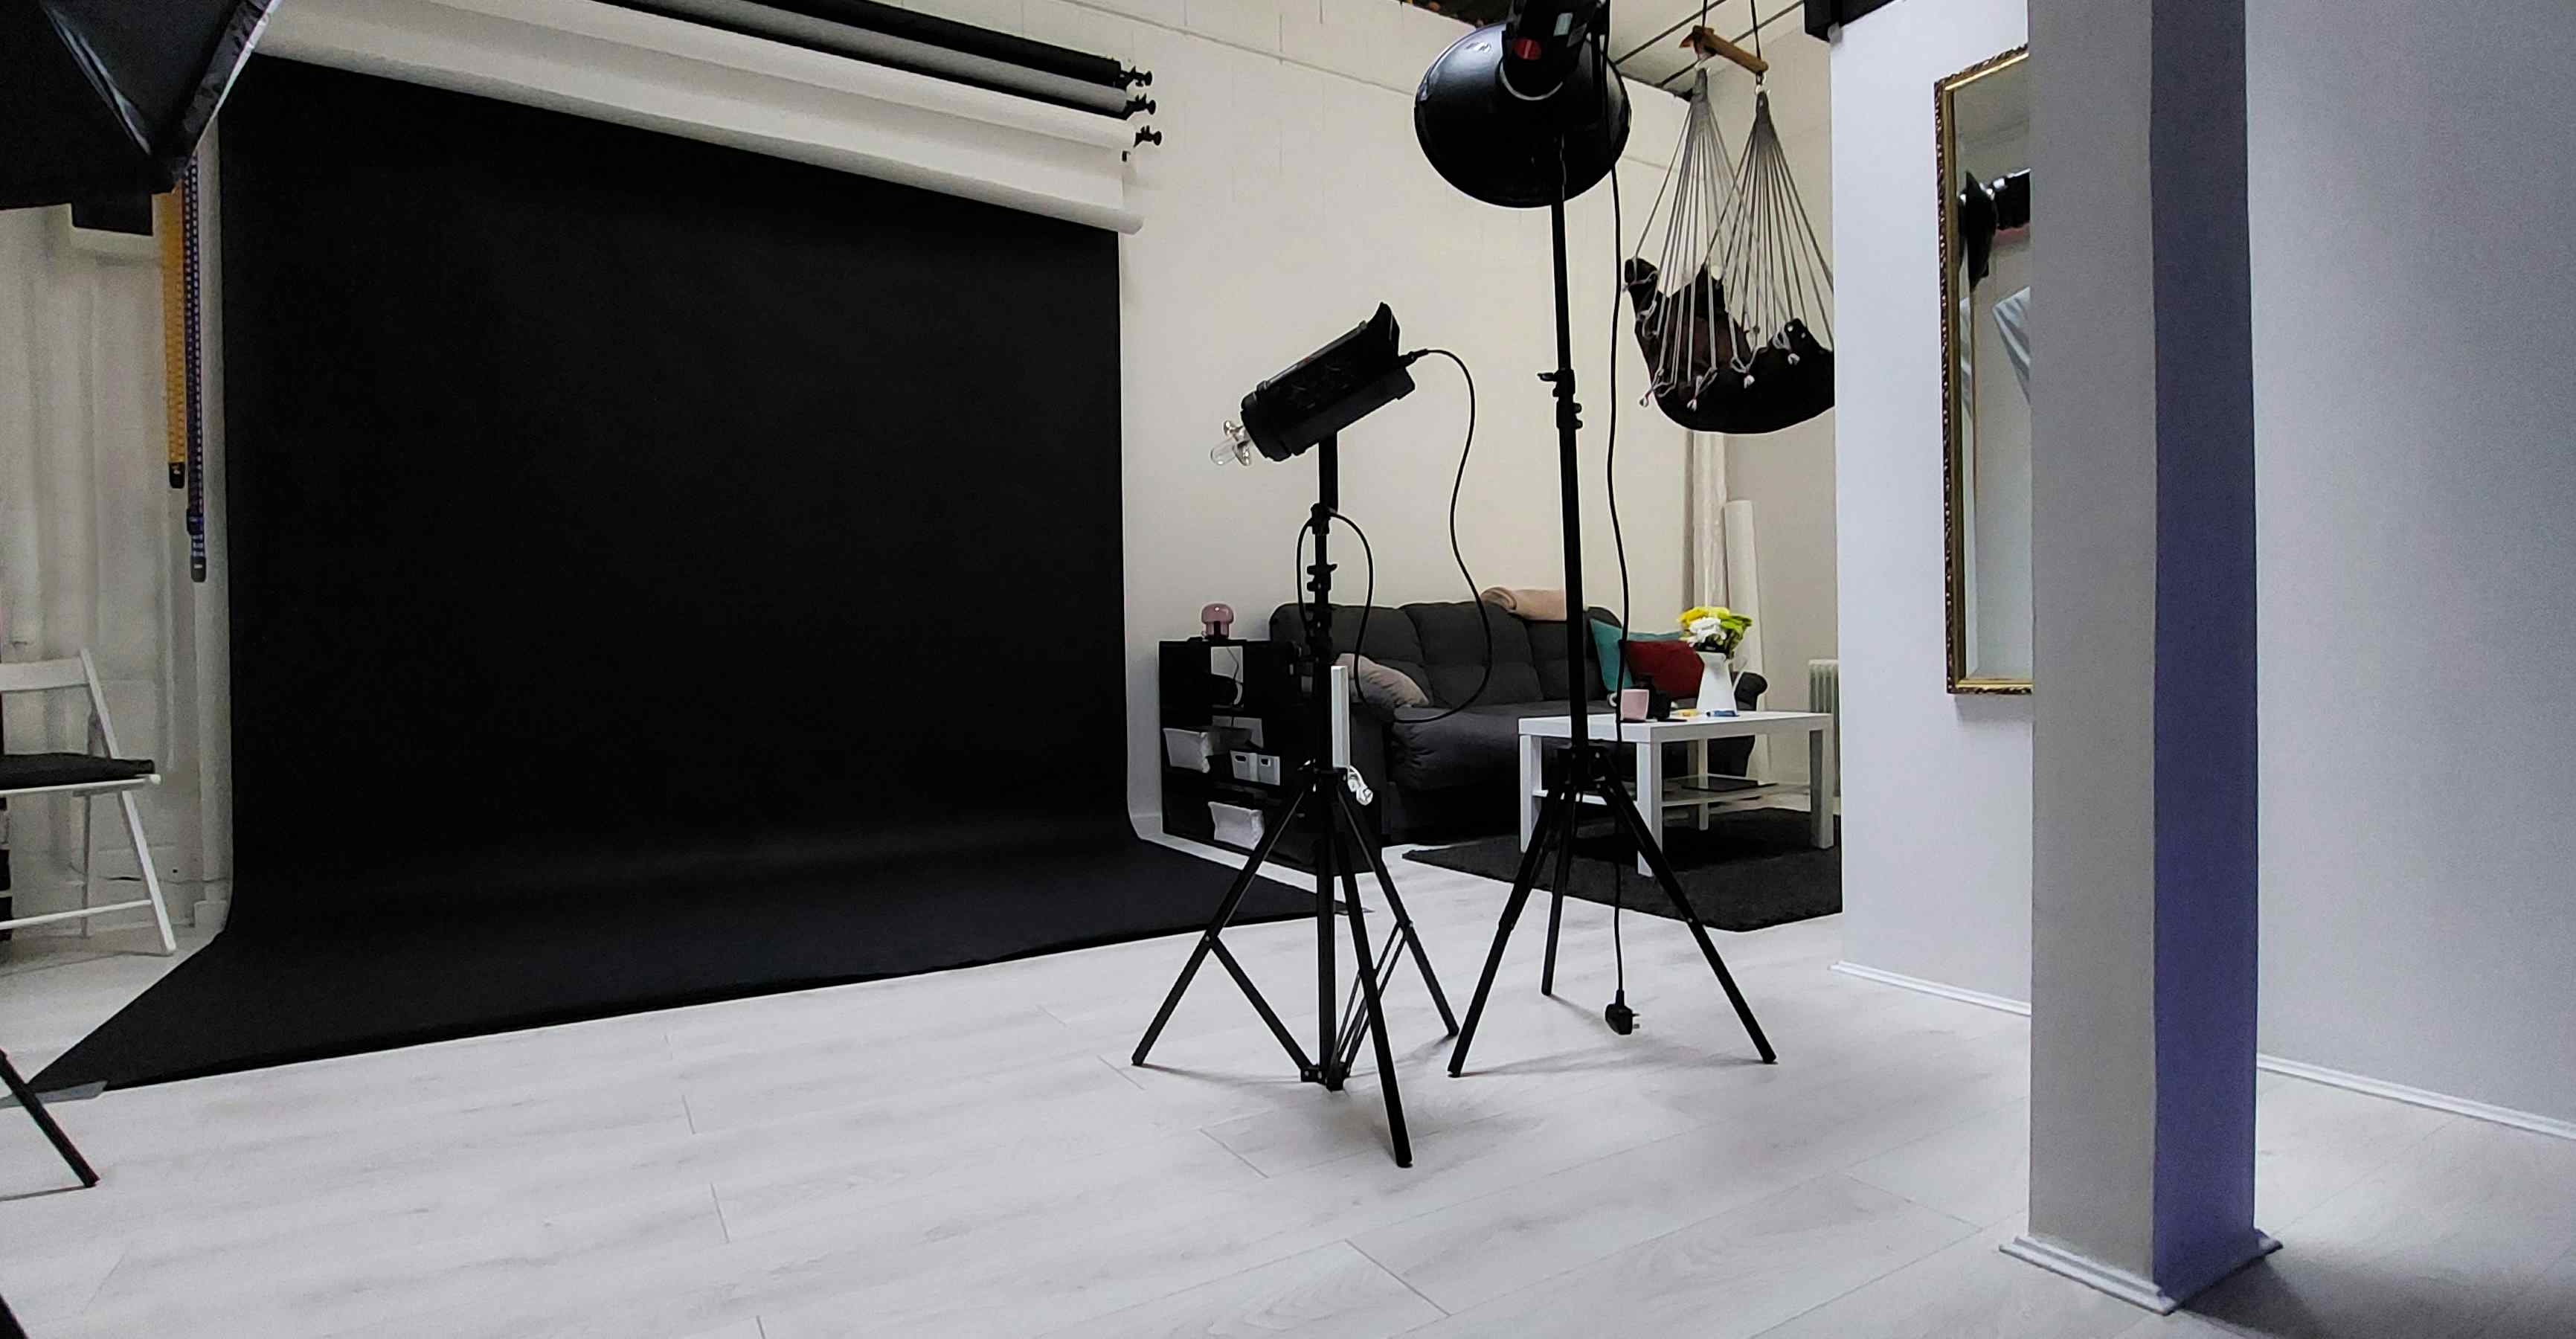 Mons Studio - Photography & Video Studio, Mons Studio - Photo/Video Studio in Hackney Wick